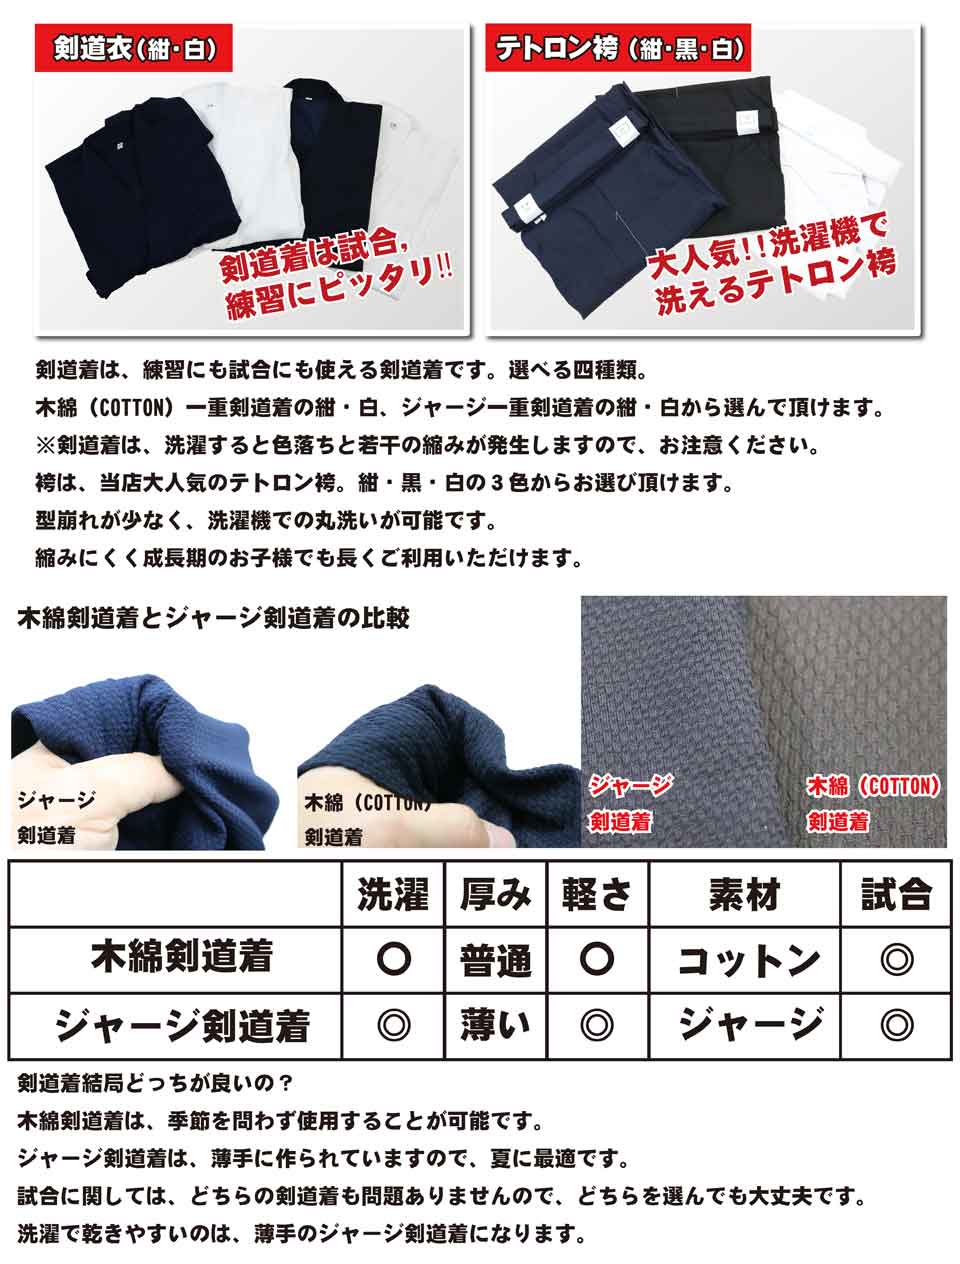 剣道着は、練習にも試合にも使える剣道着です。選べる四種類。袴は、当店大人気のテトロン袴。紺・黒・白の３色からお選び頂けます。